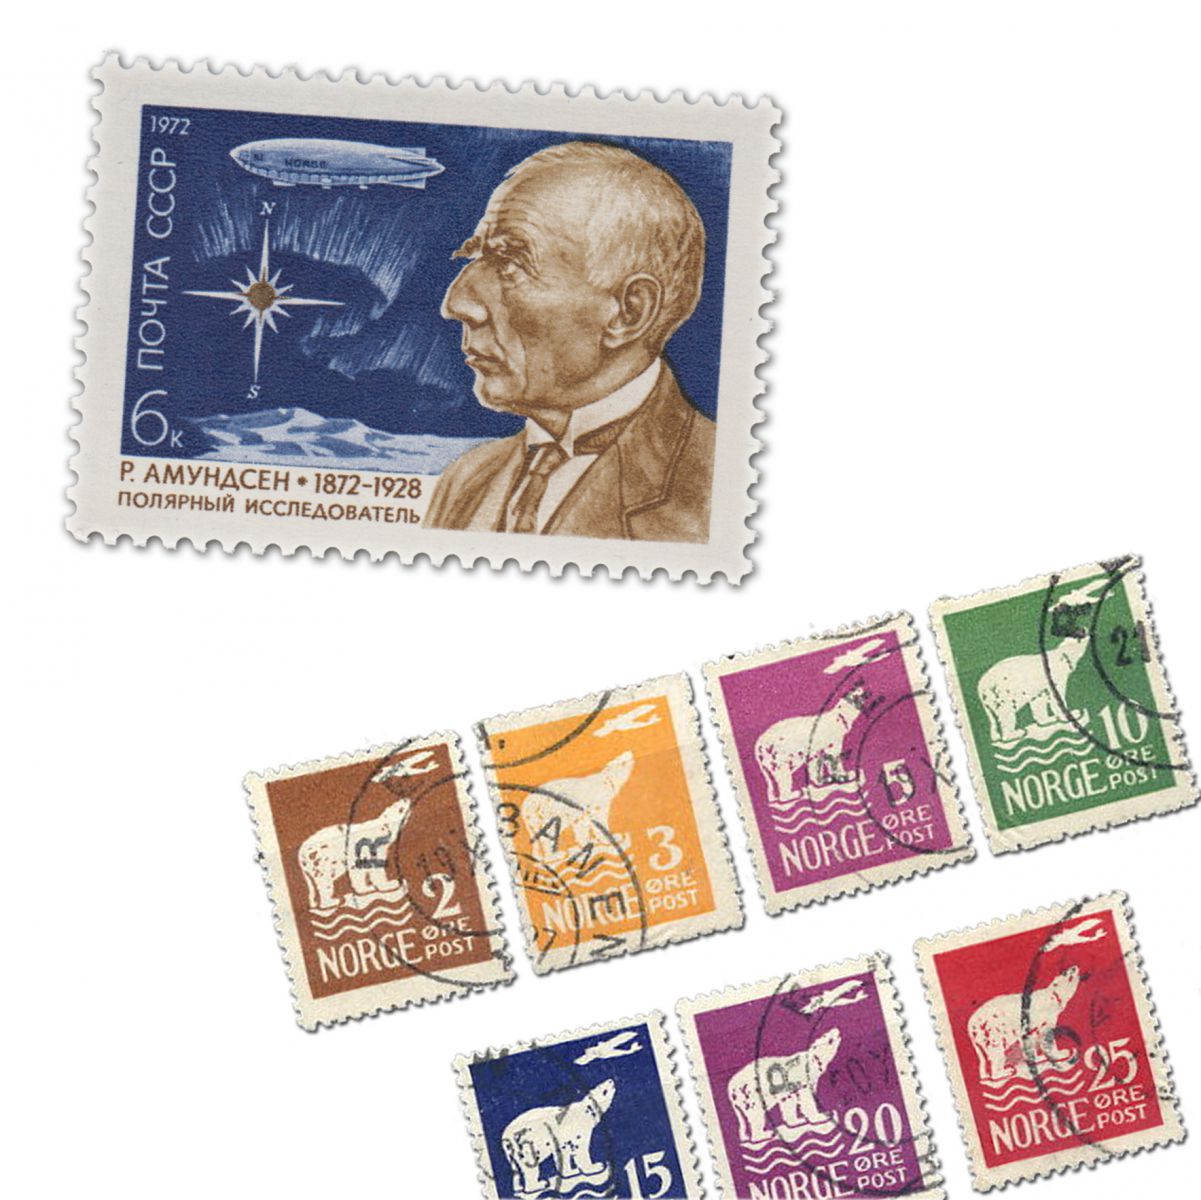 Амундсен на советской почтовой марке 1972 года